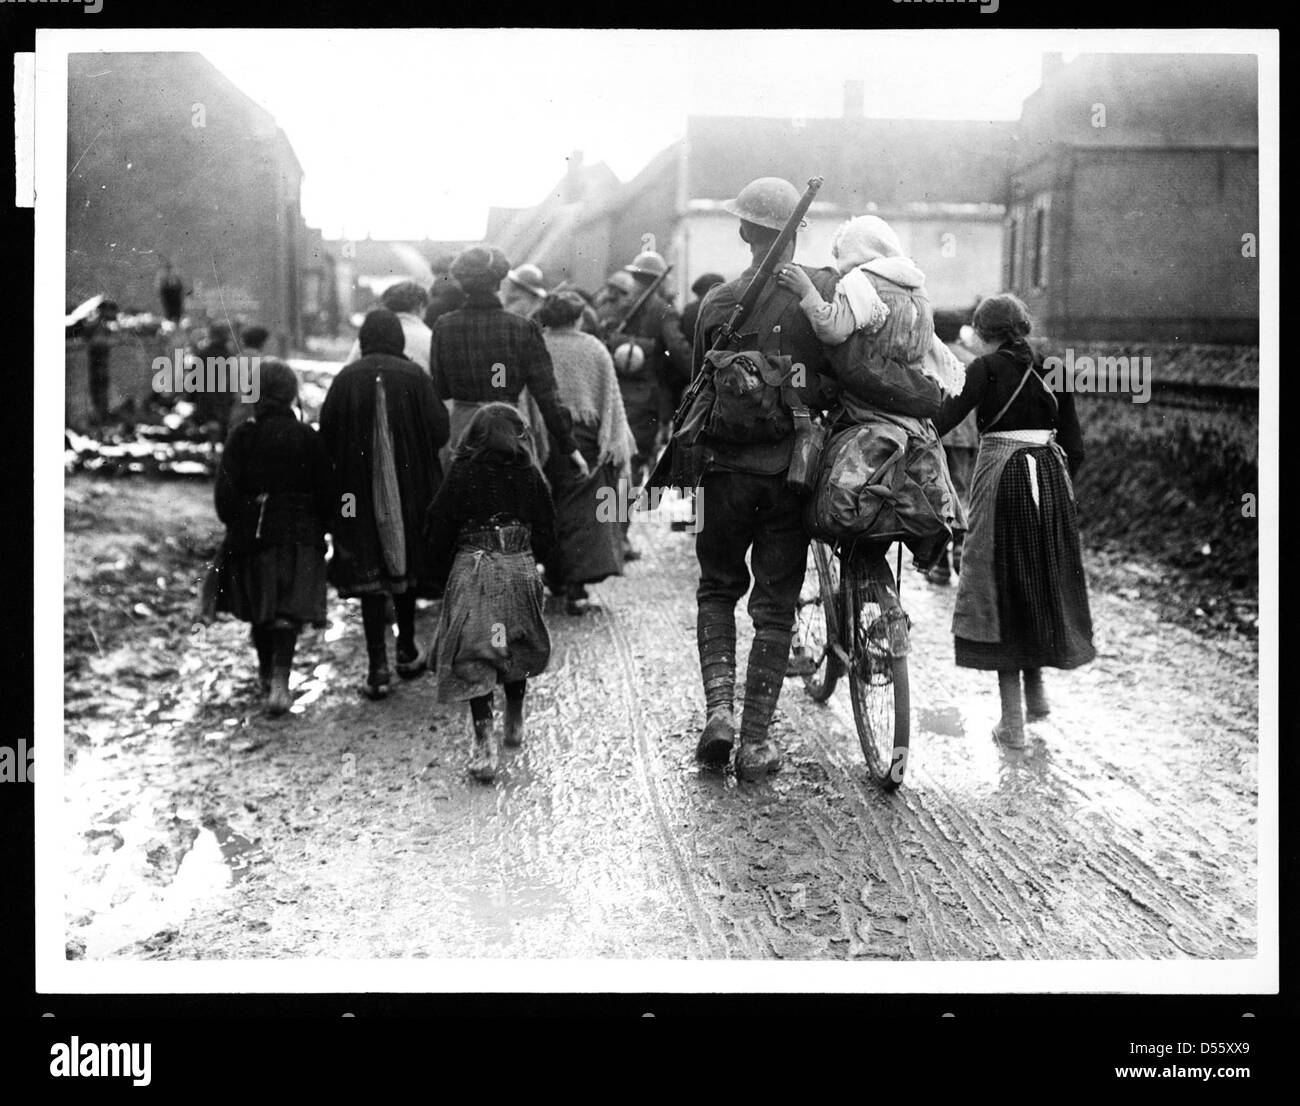 Soldats britanniques arrivant dans un village, au cours de la Première Guerre mondiale Banque D'Images